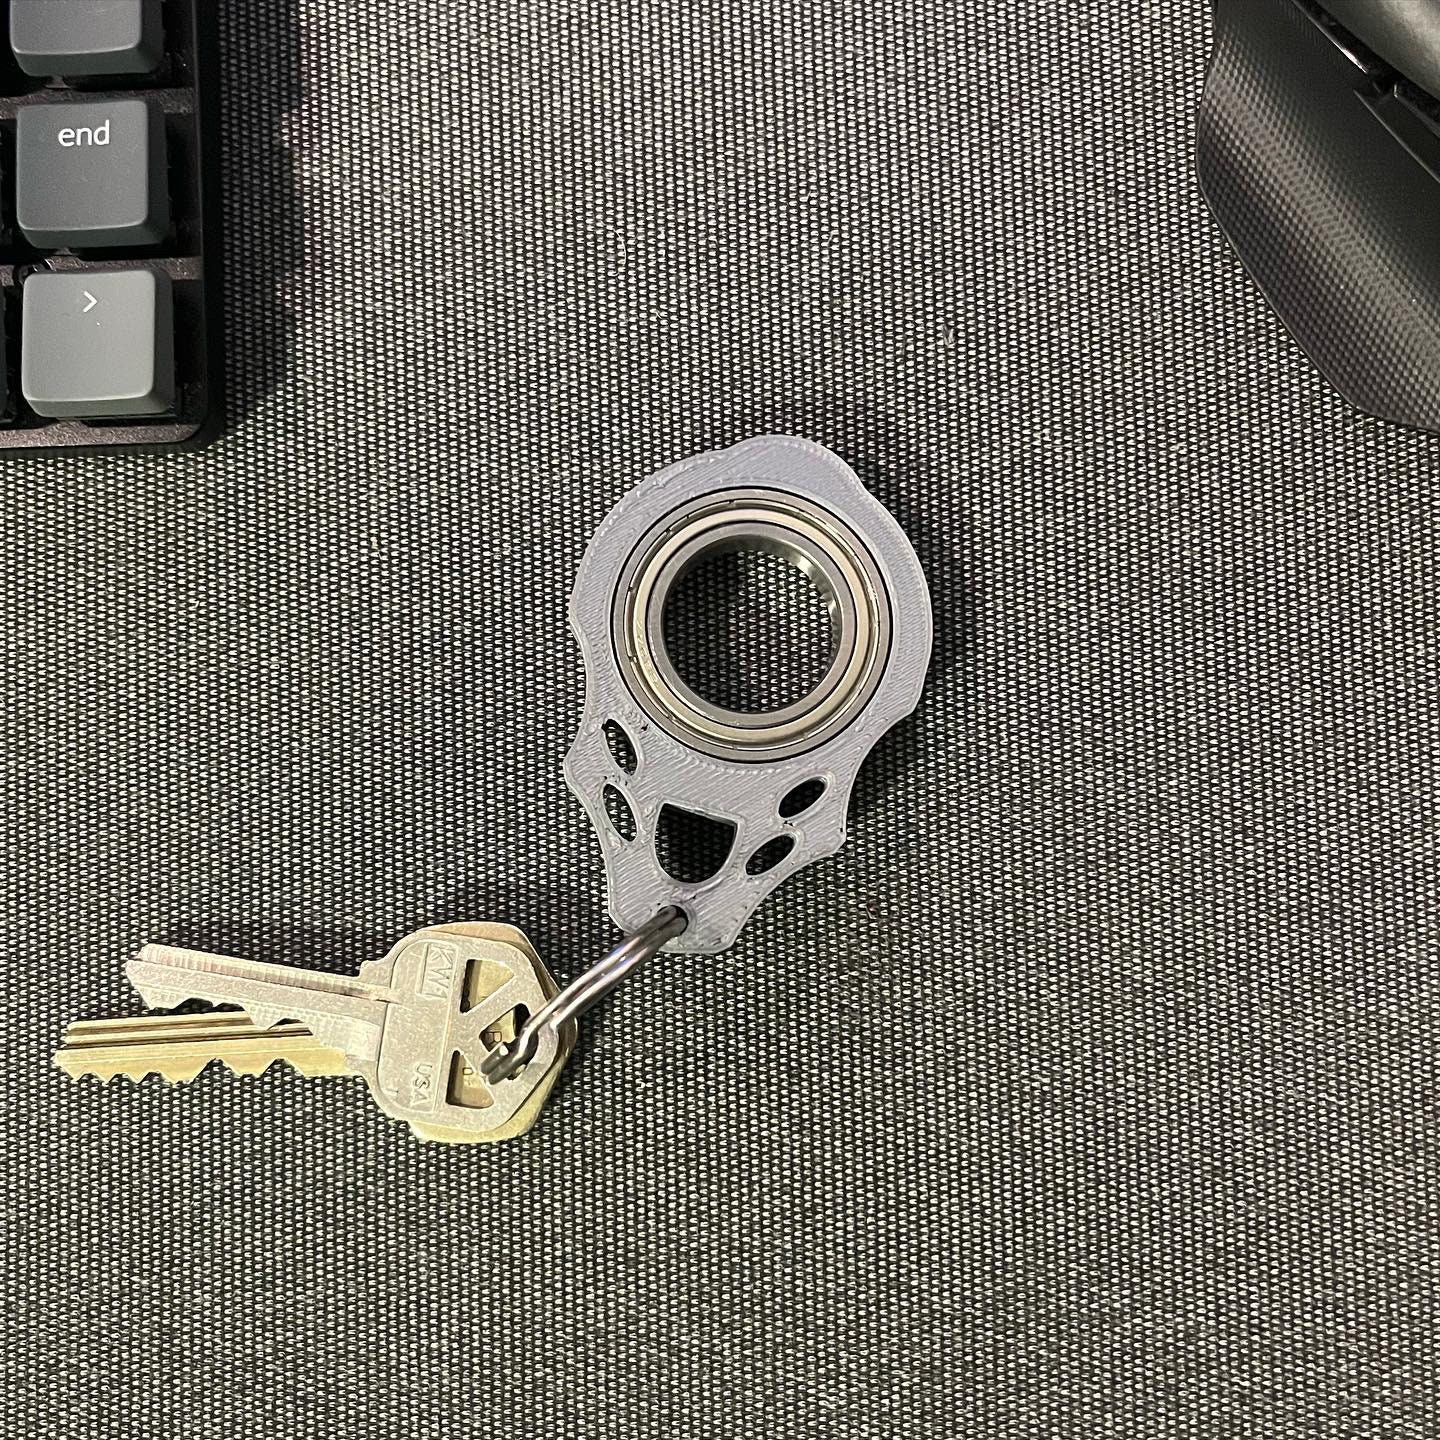 STL file Ninja Key Keychain Spinner, Keyrambit Fidget Spinner